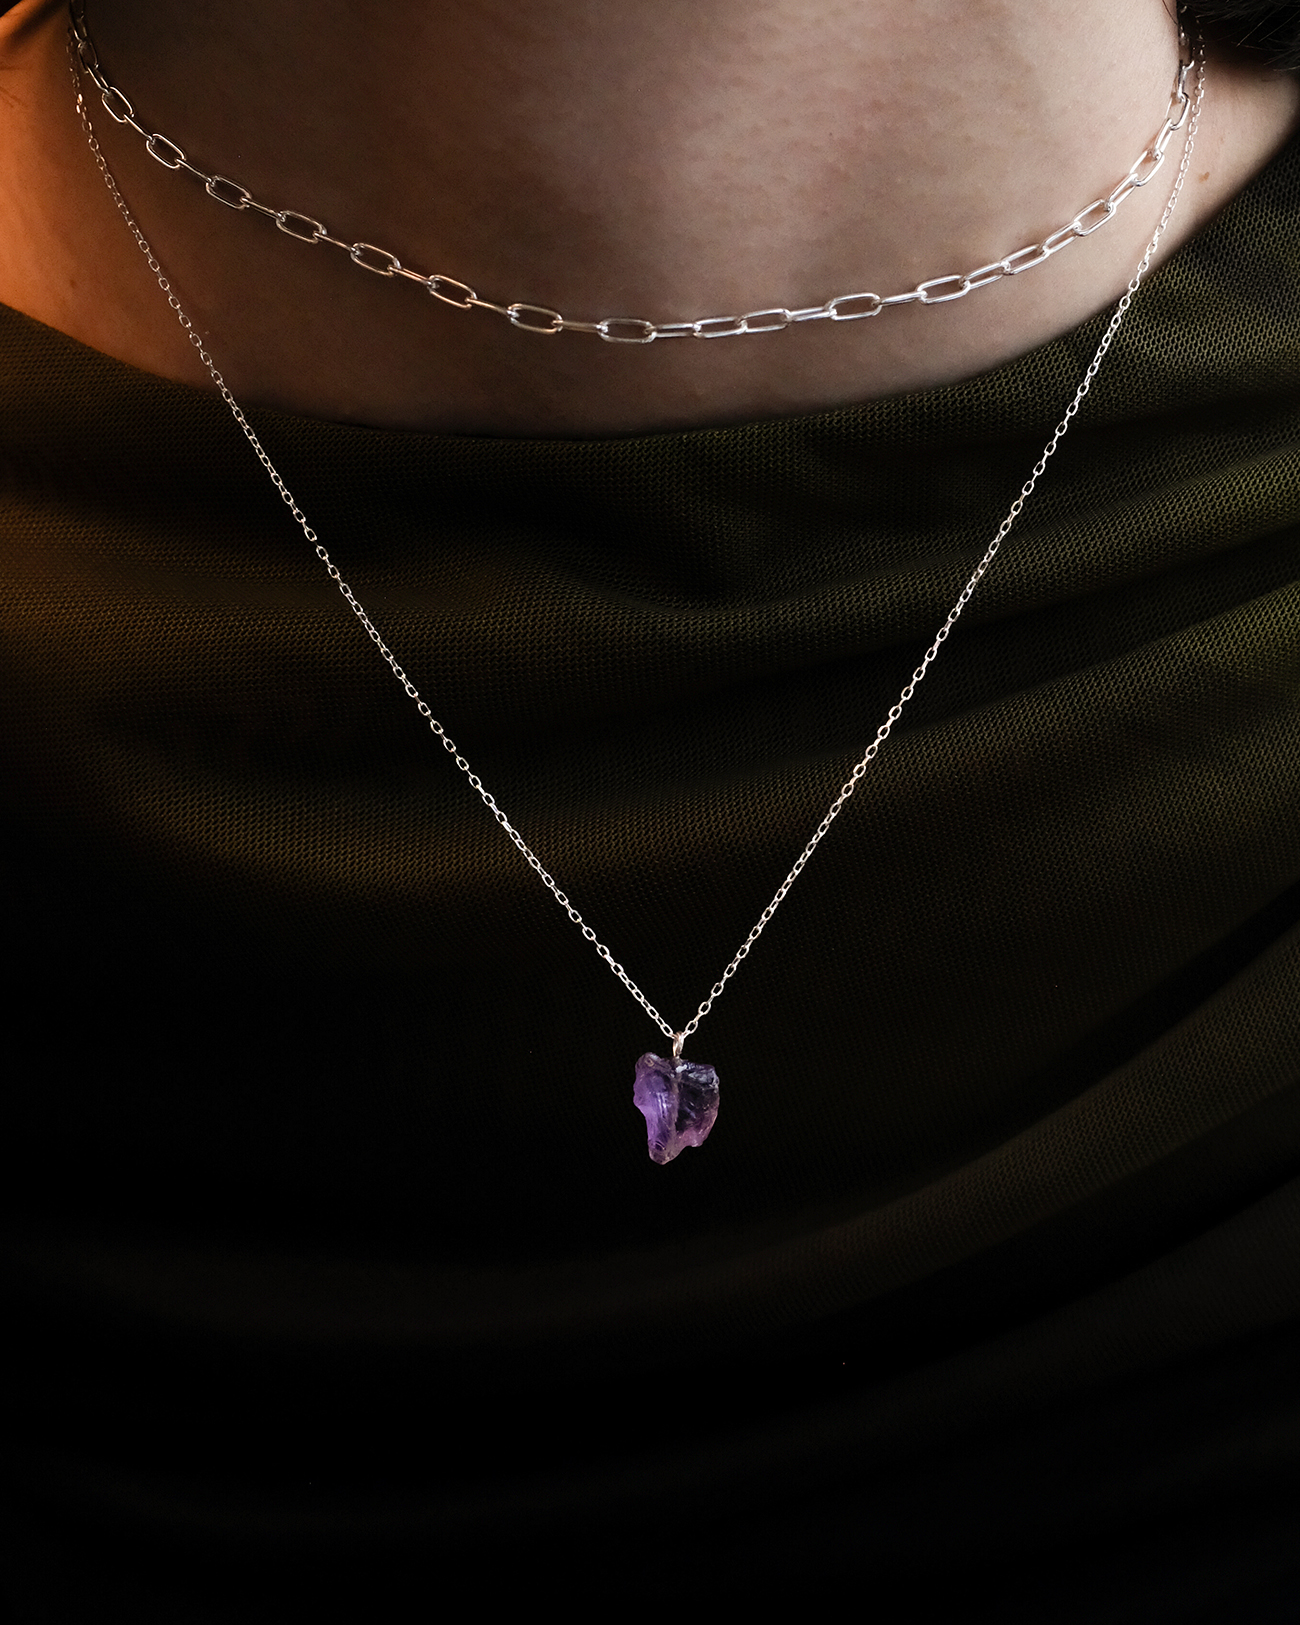 Metaformi-jewelry-uncut-gems-silver-necklace-7